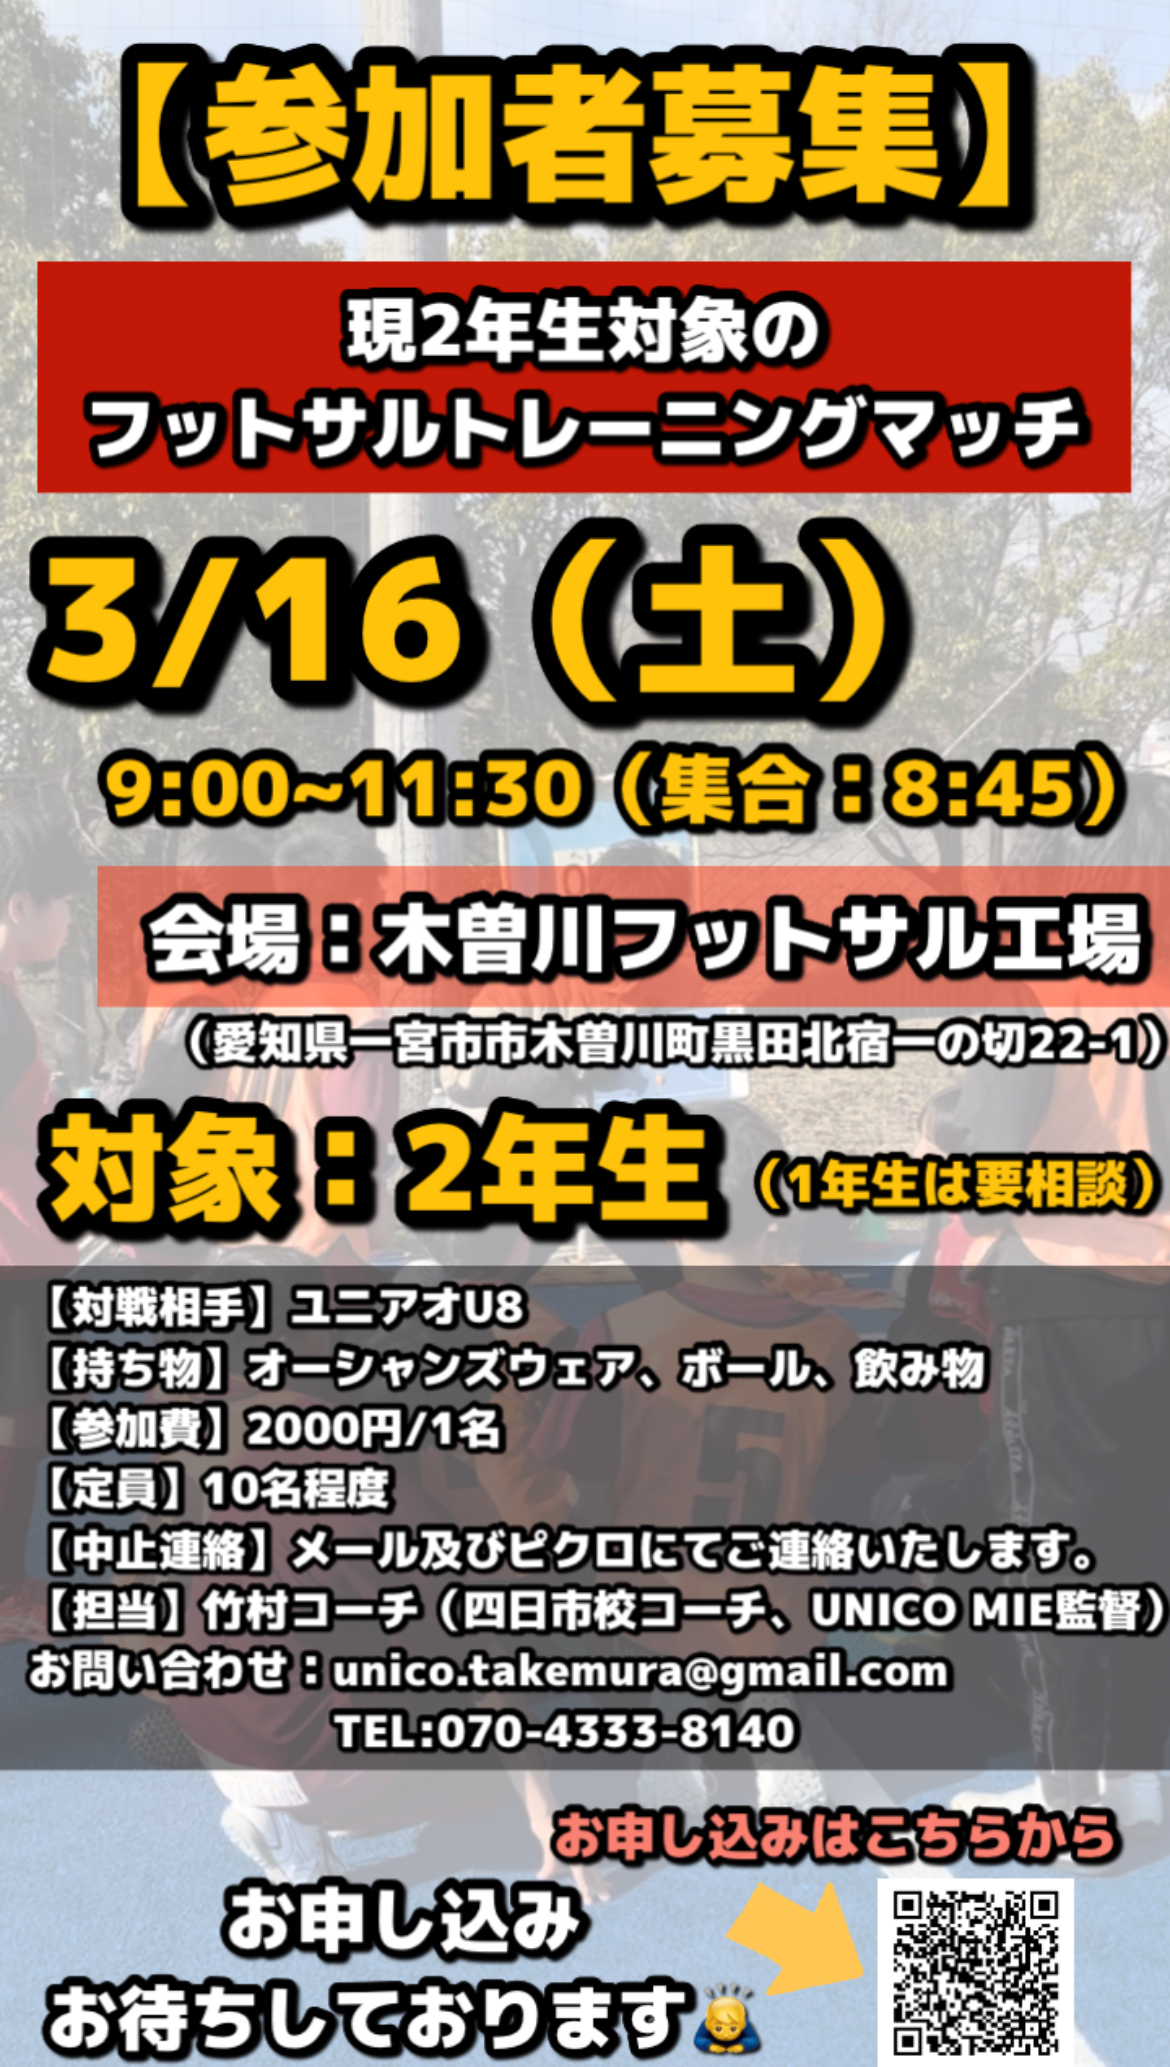 【参加者募集】3/16(土) U-8フットサルトレーニングマッチのご案内